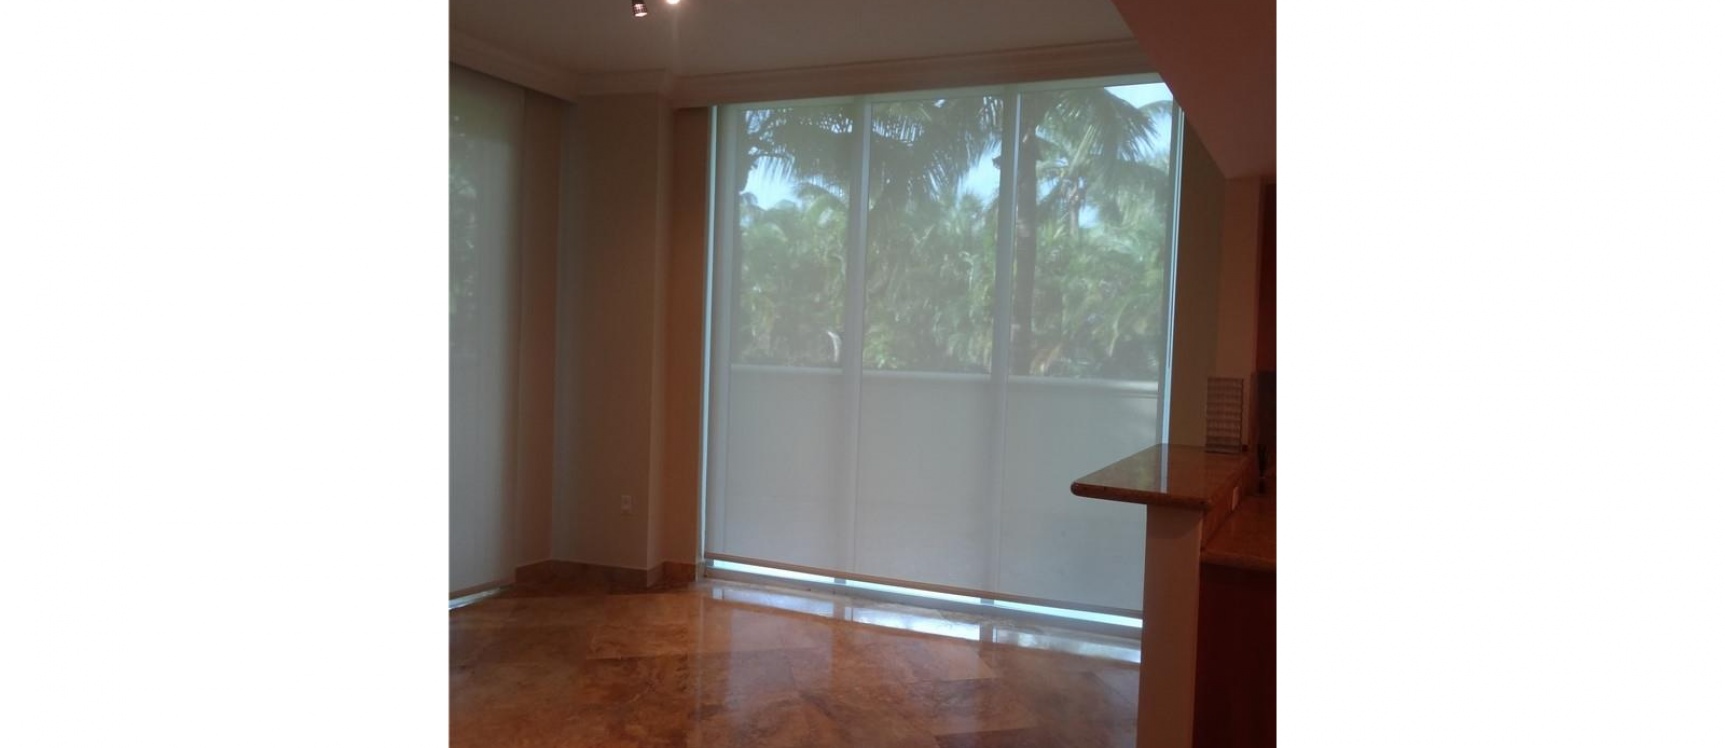 GeoBienes - Departamento de venta en Miami, DUO Hallandale Beach - Plusvalia Guayaquil Casas de venta y alquiler Inmobiliaria Ecuador